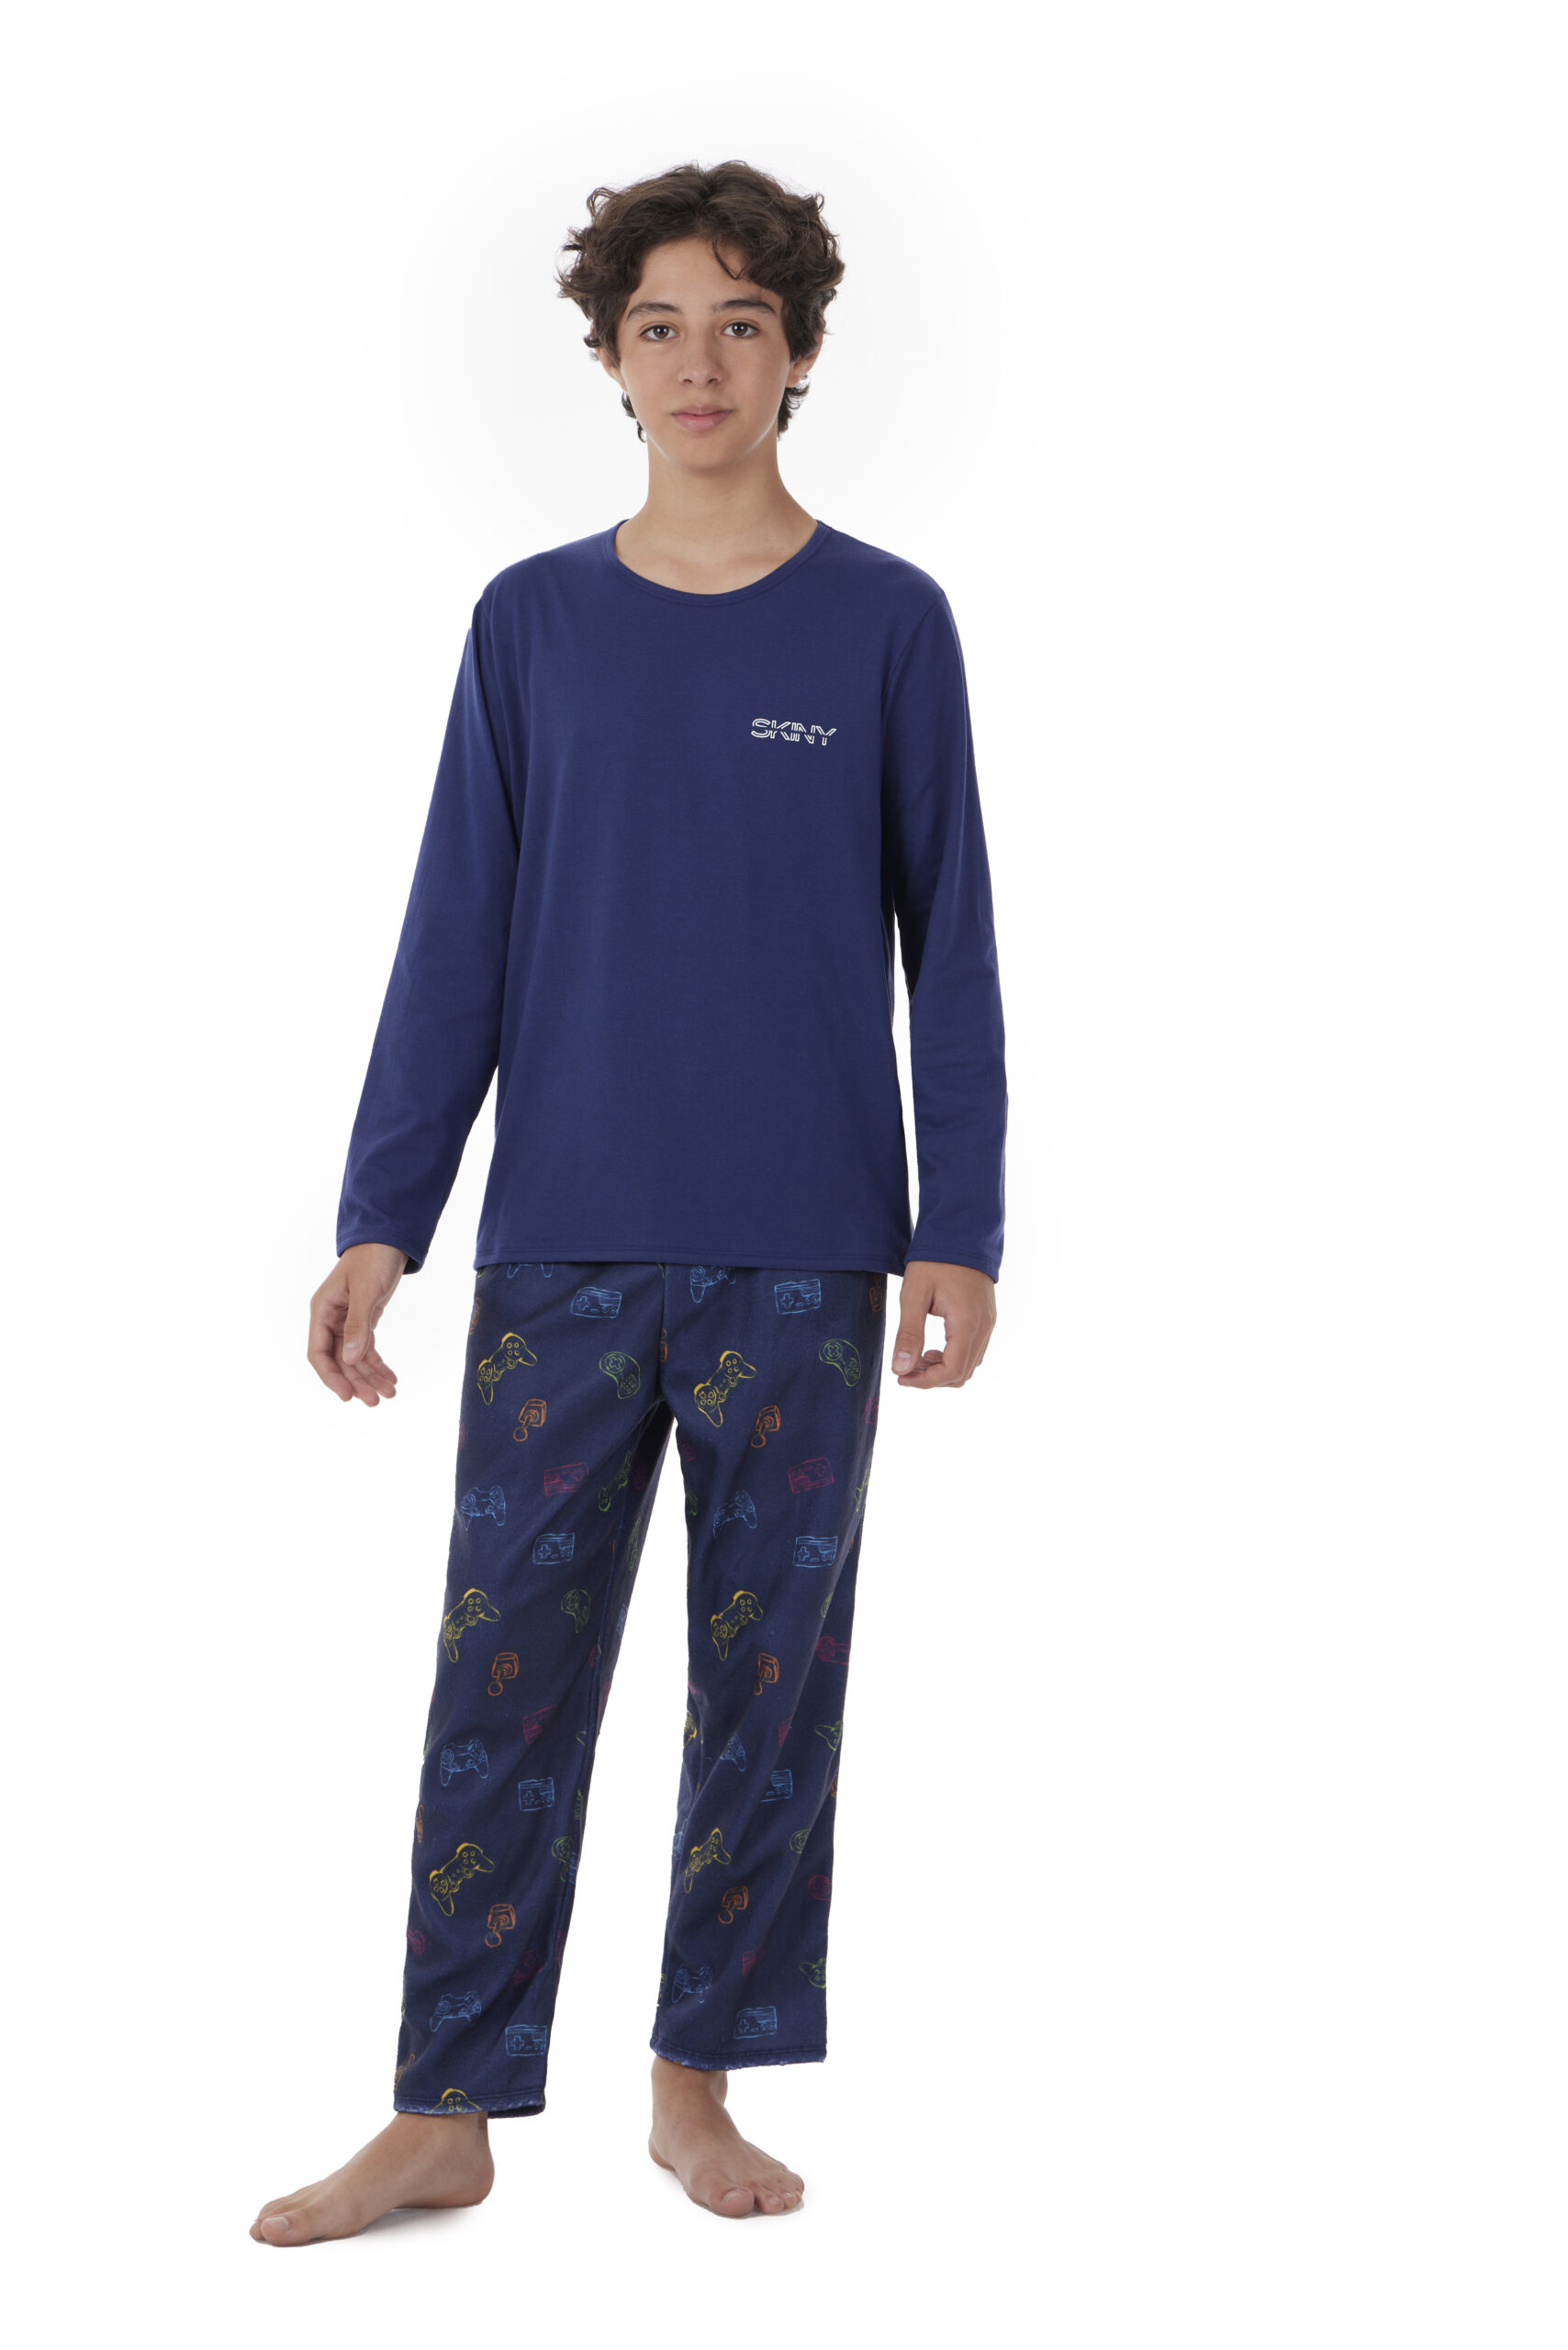 pijama-manga-larga-algodon-y-pantalon-polar-skiny-75226-nino